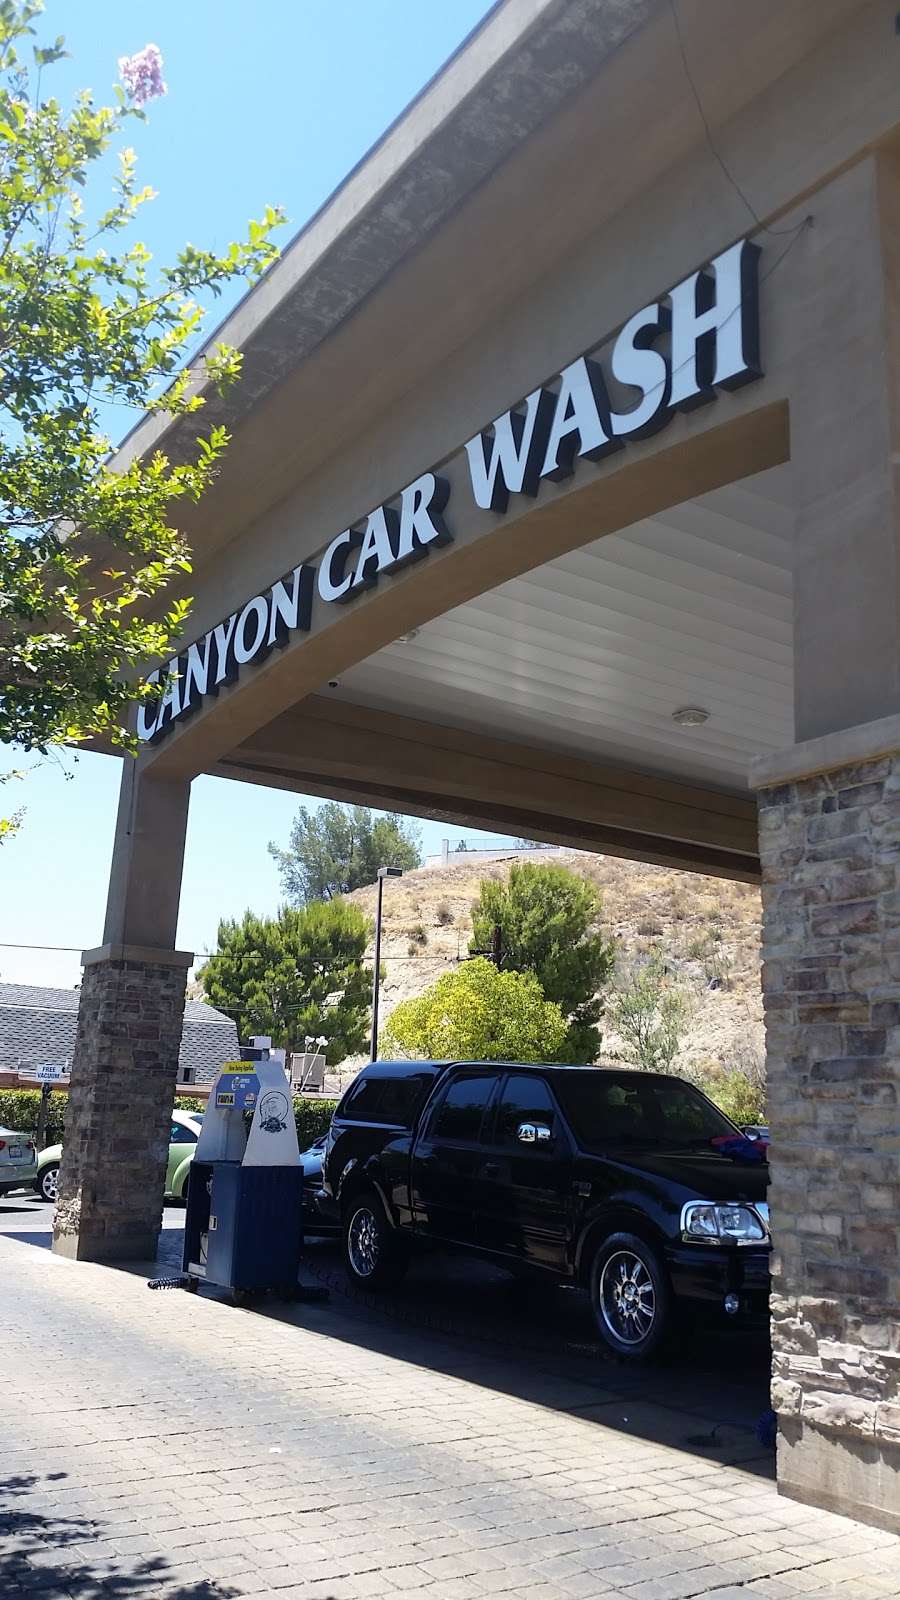 Canyon Car Wash | 18727 Soledad Canyon Rd, Santa Clarita, CA 91351 | Phone: (661) 250-0399